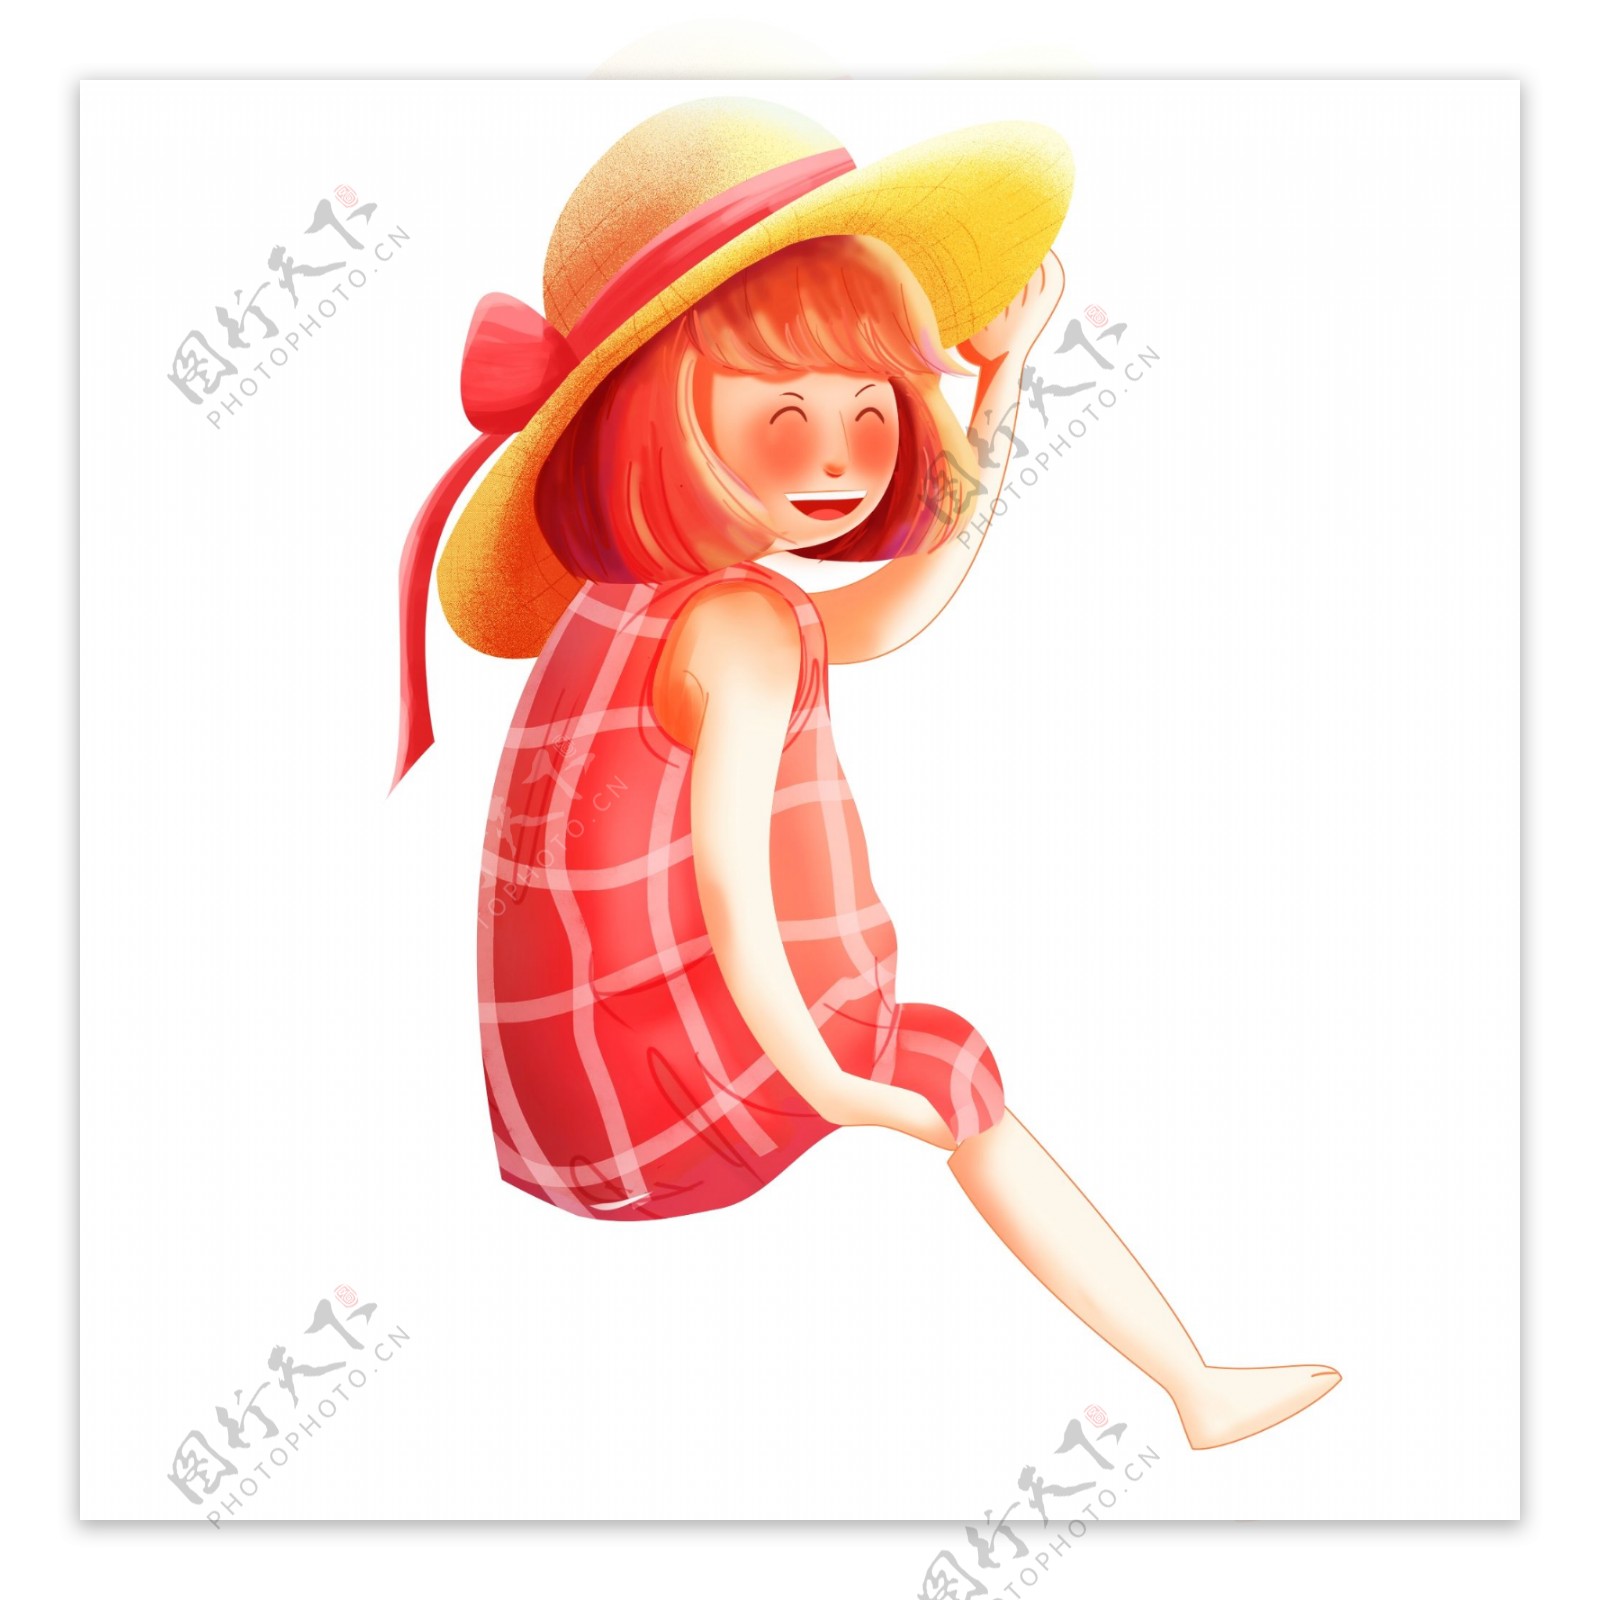 彩绘一个戴着草帽的可爱小女生